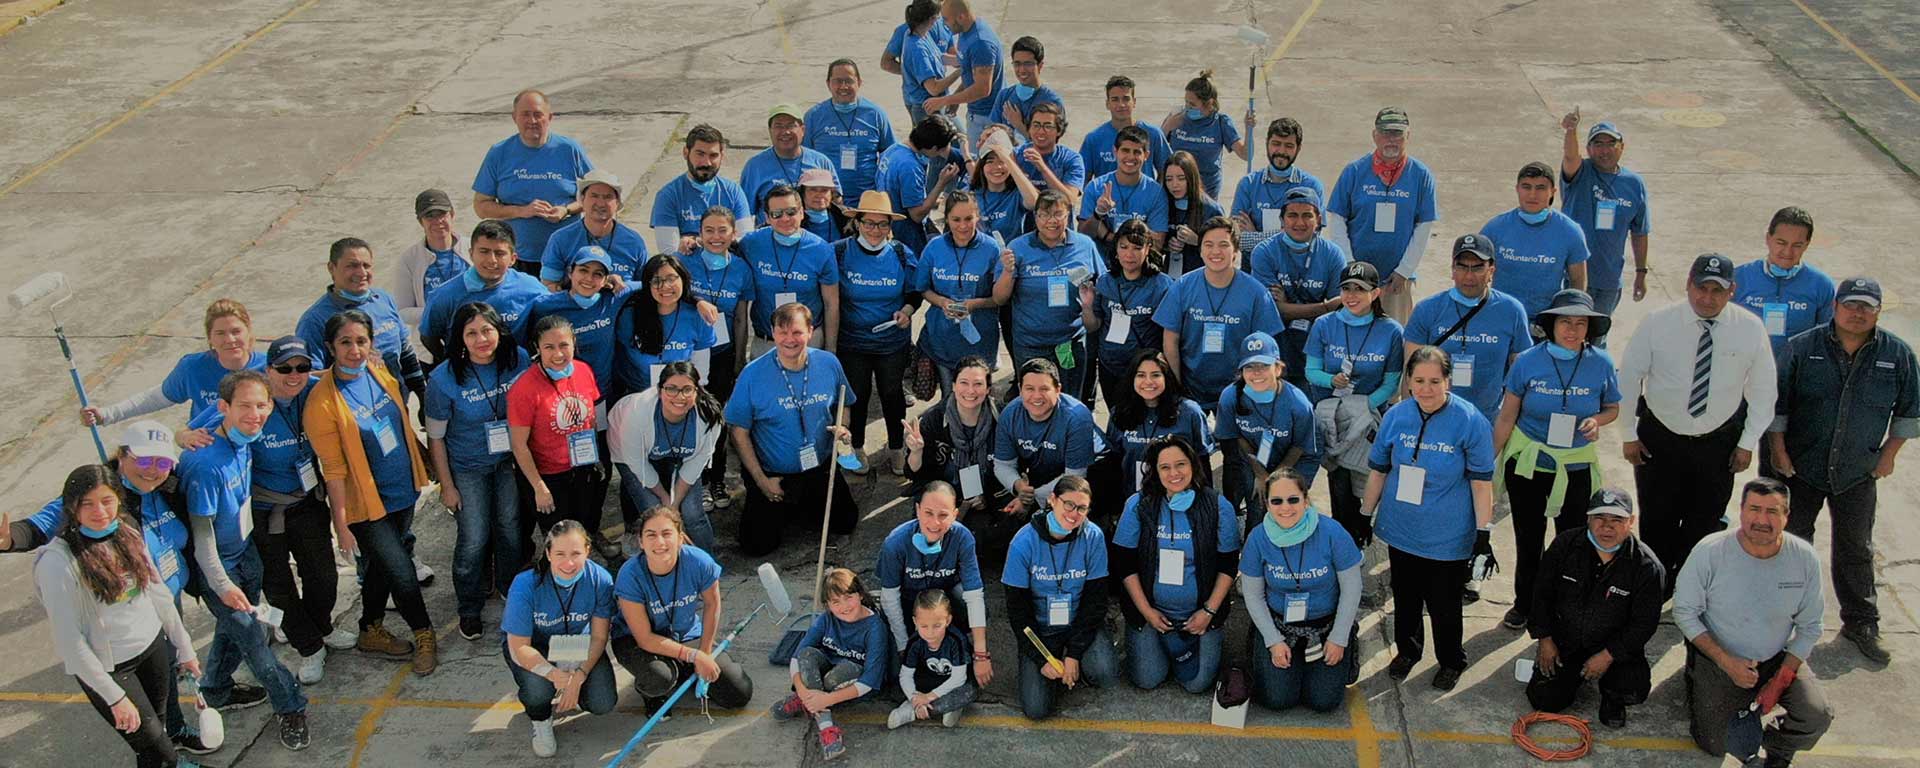 Comunidad Tec del Campus Toluca participando en el Voluntariado Tec 